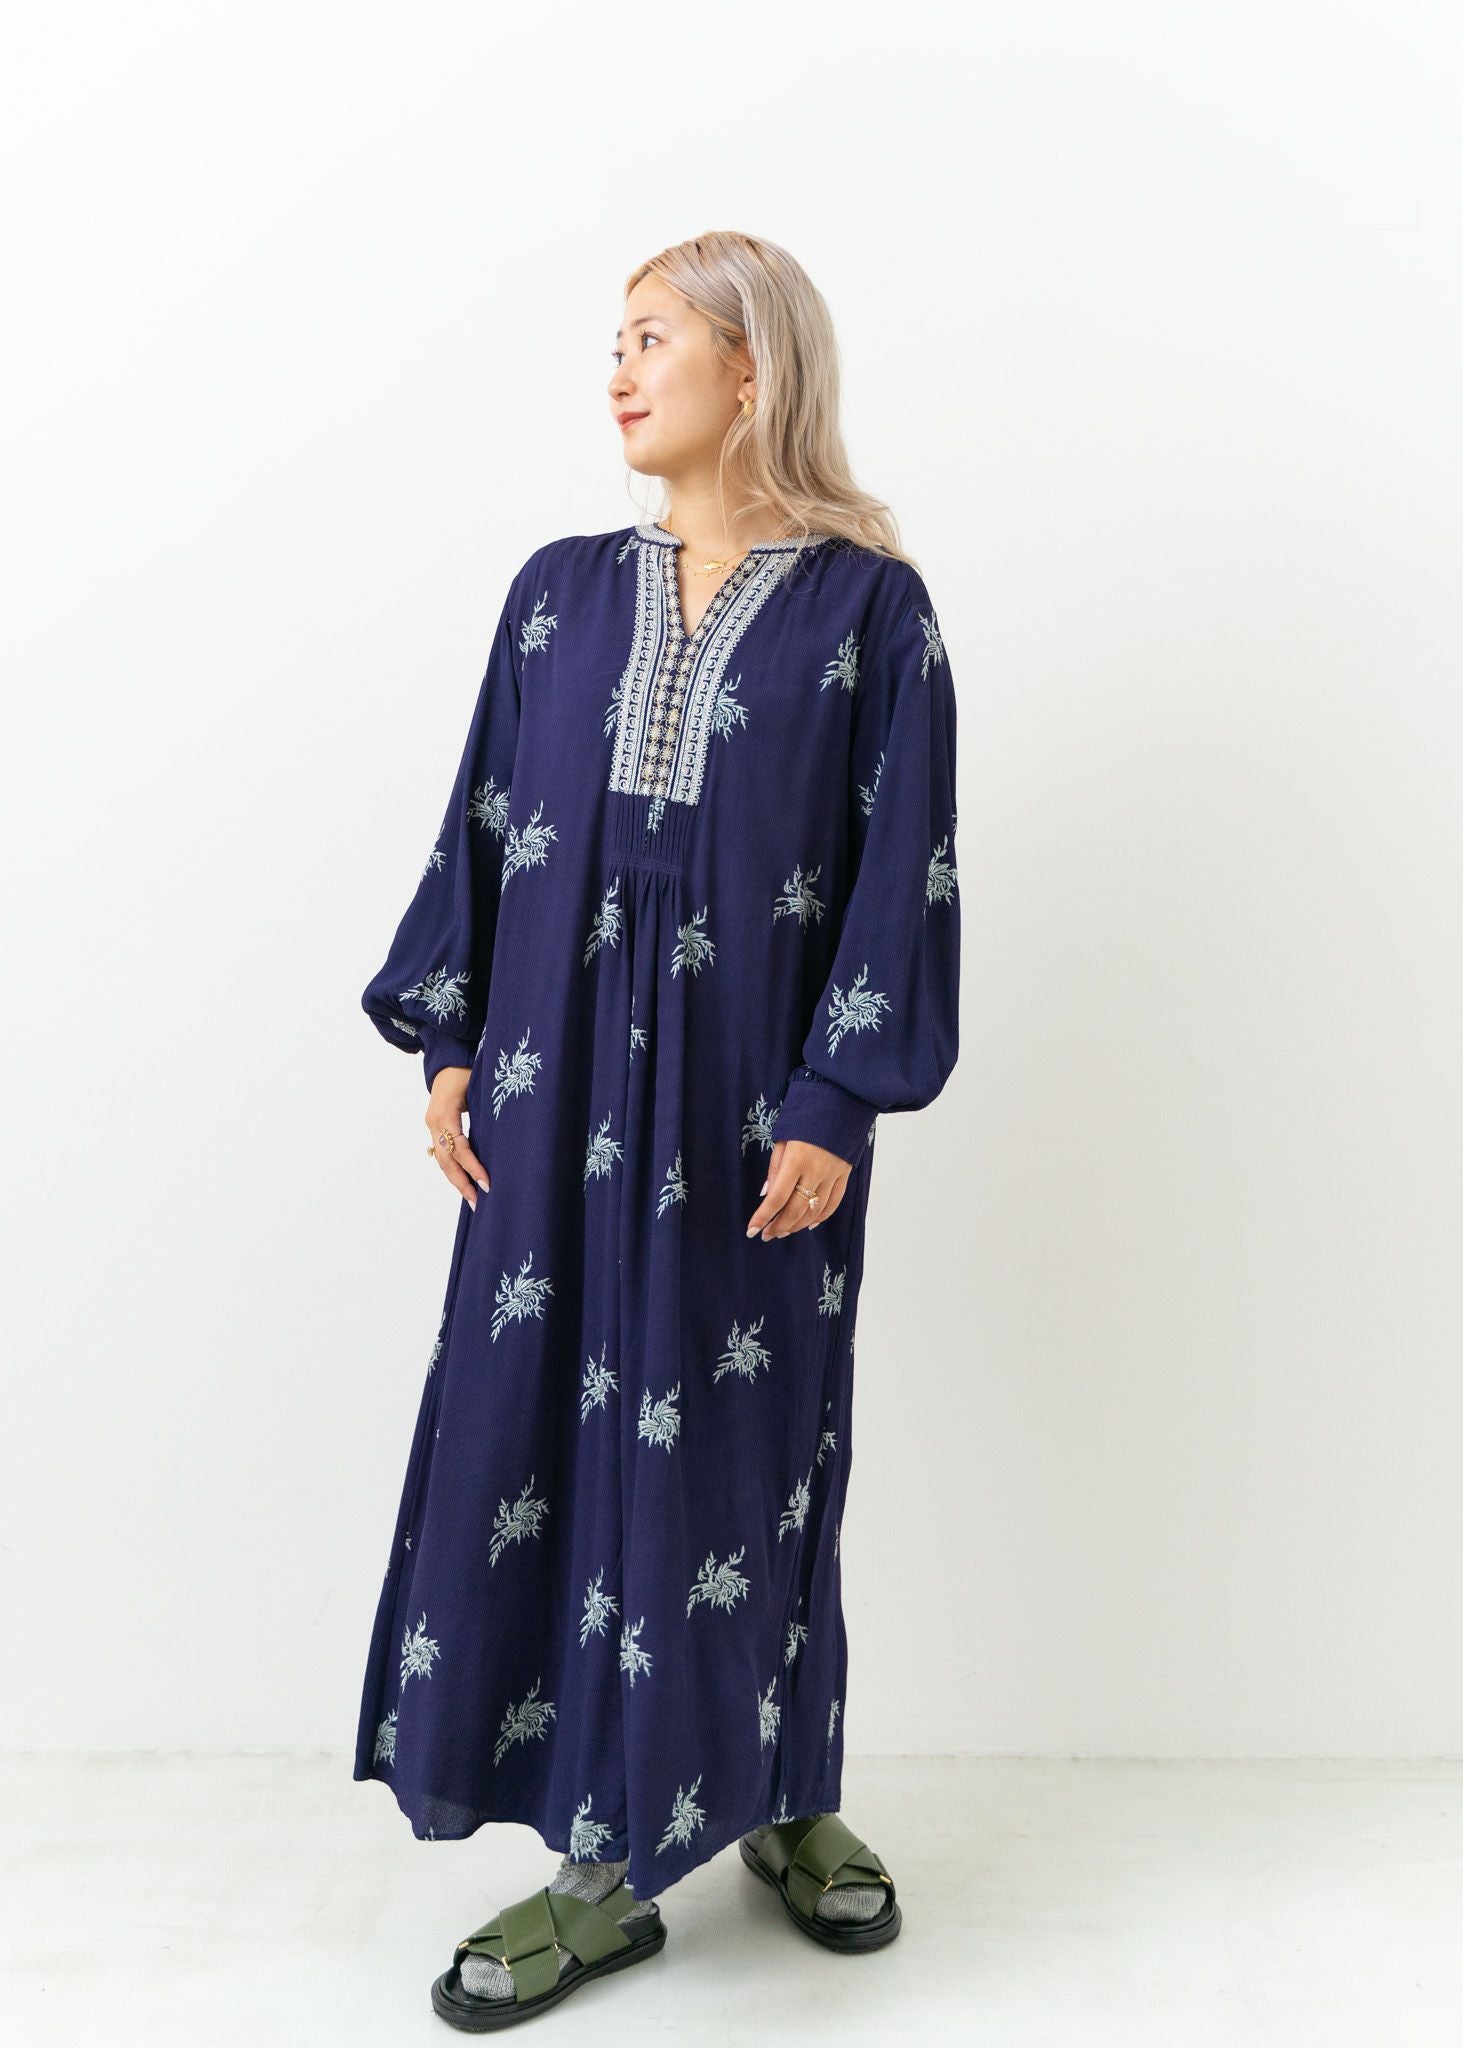 Moss Rayon Embroidery Dress